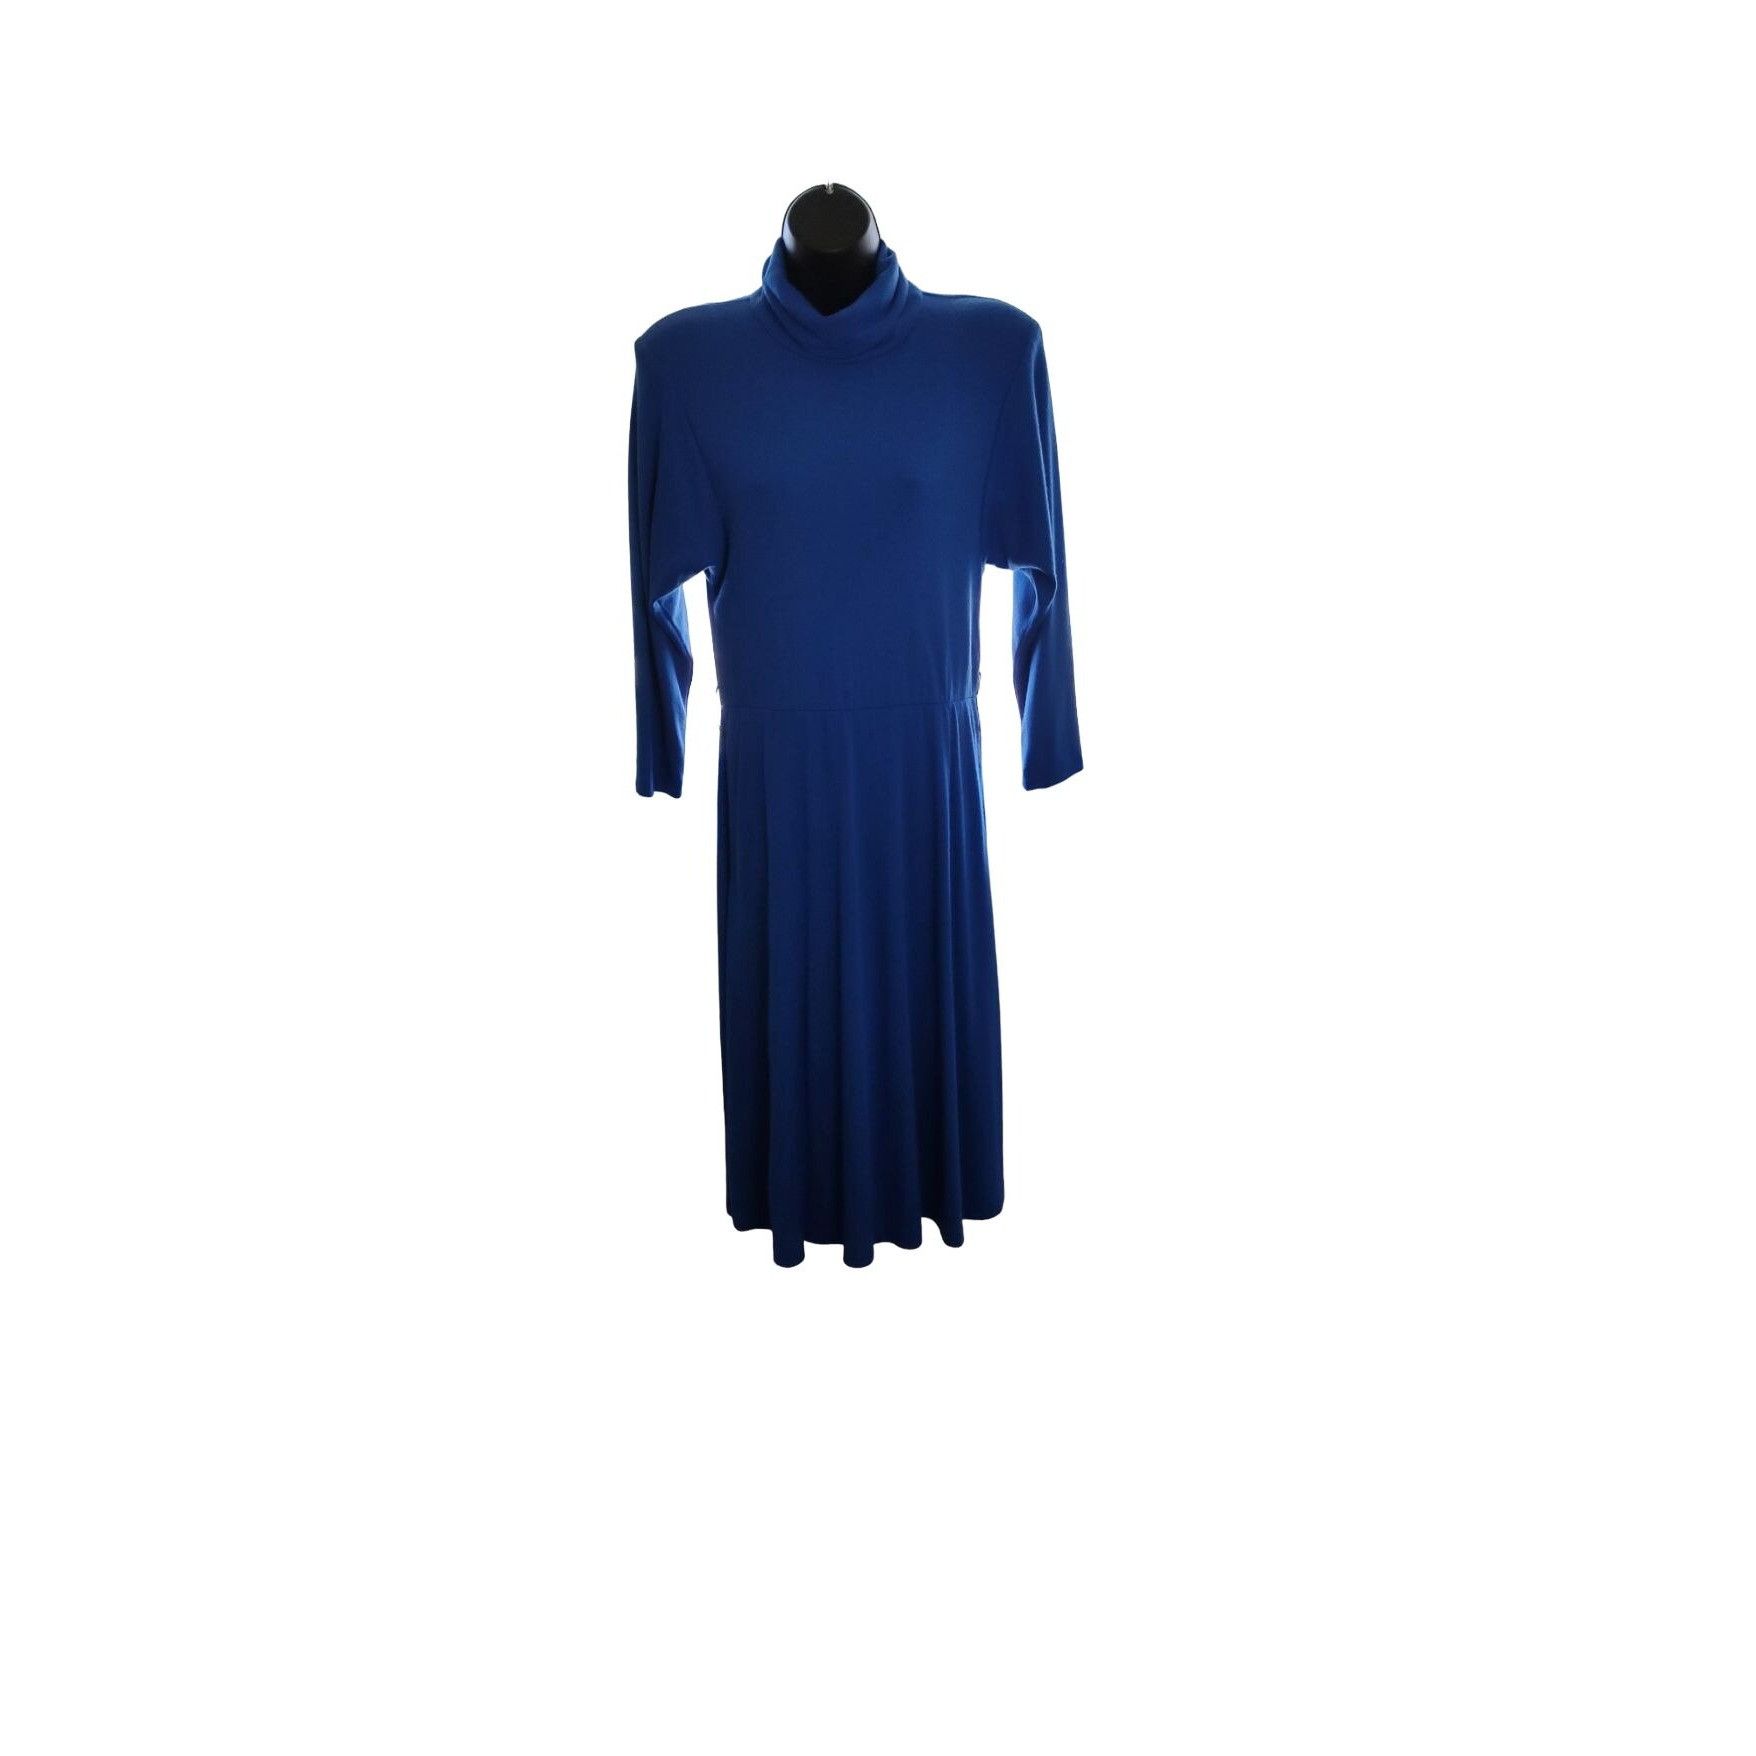 Vintage 1980's Joni Blair Blue Midi Dress Size M / US 6-8 / IT 42-44 - 5 Thumbnail